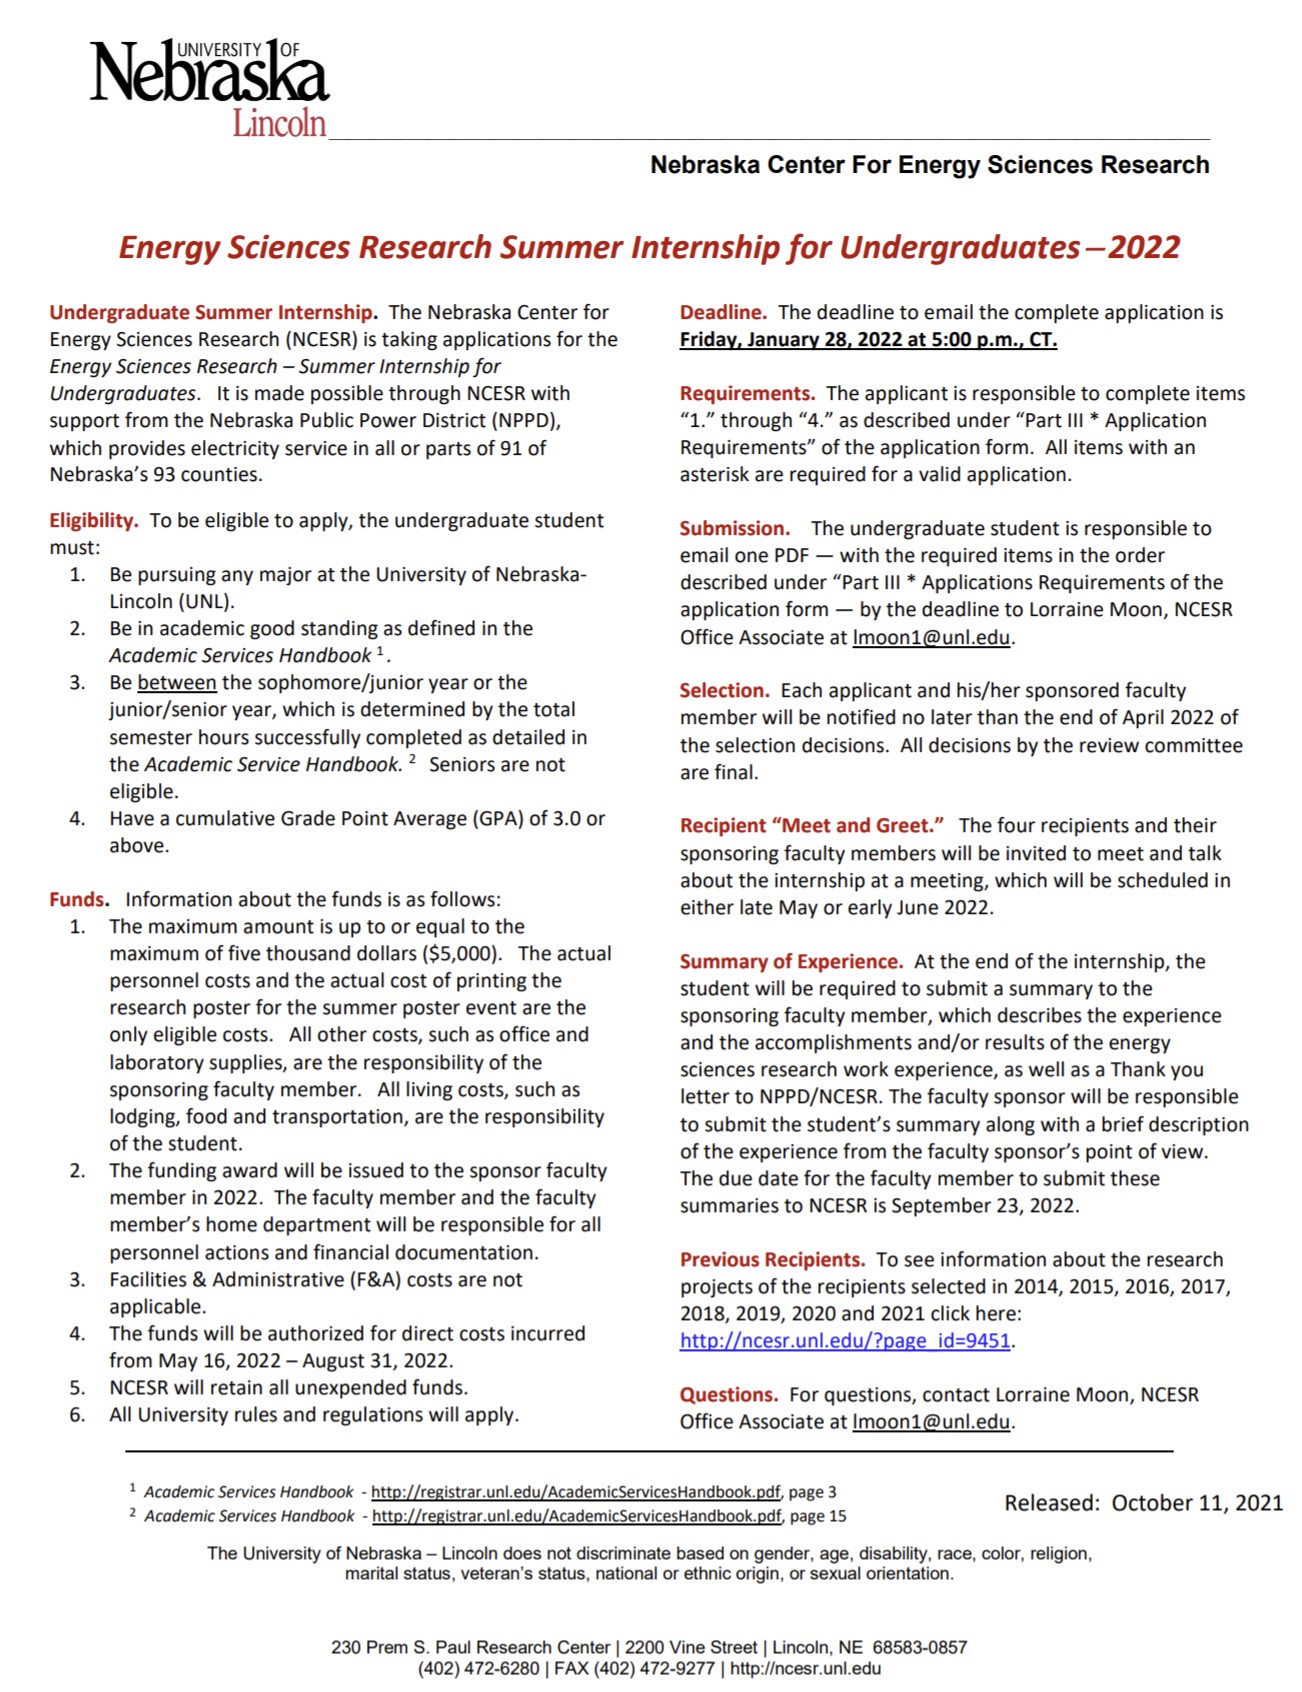 summer-internship-applications-deadline-extended-for-nebraska-energy